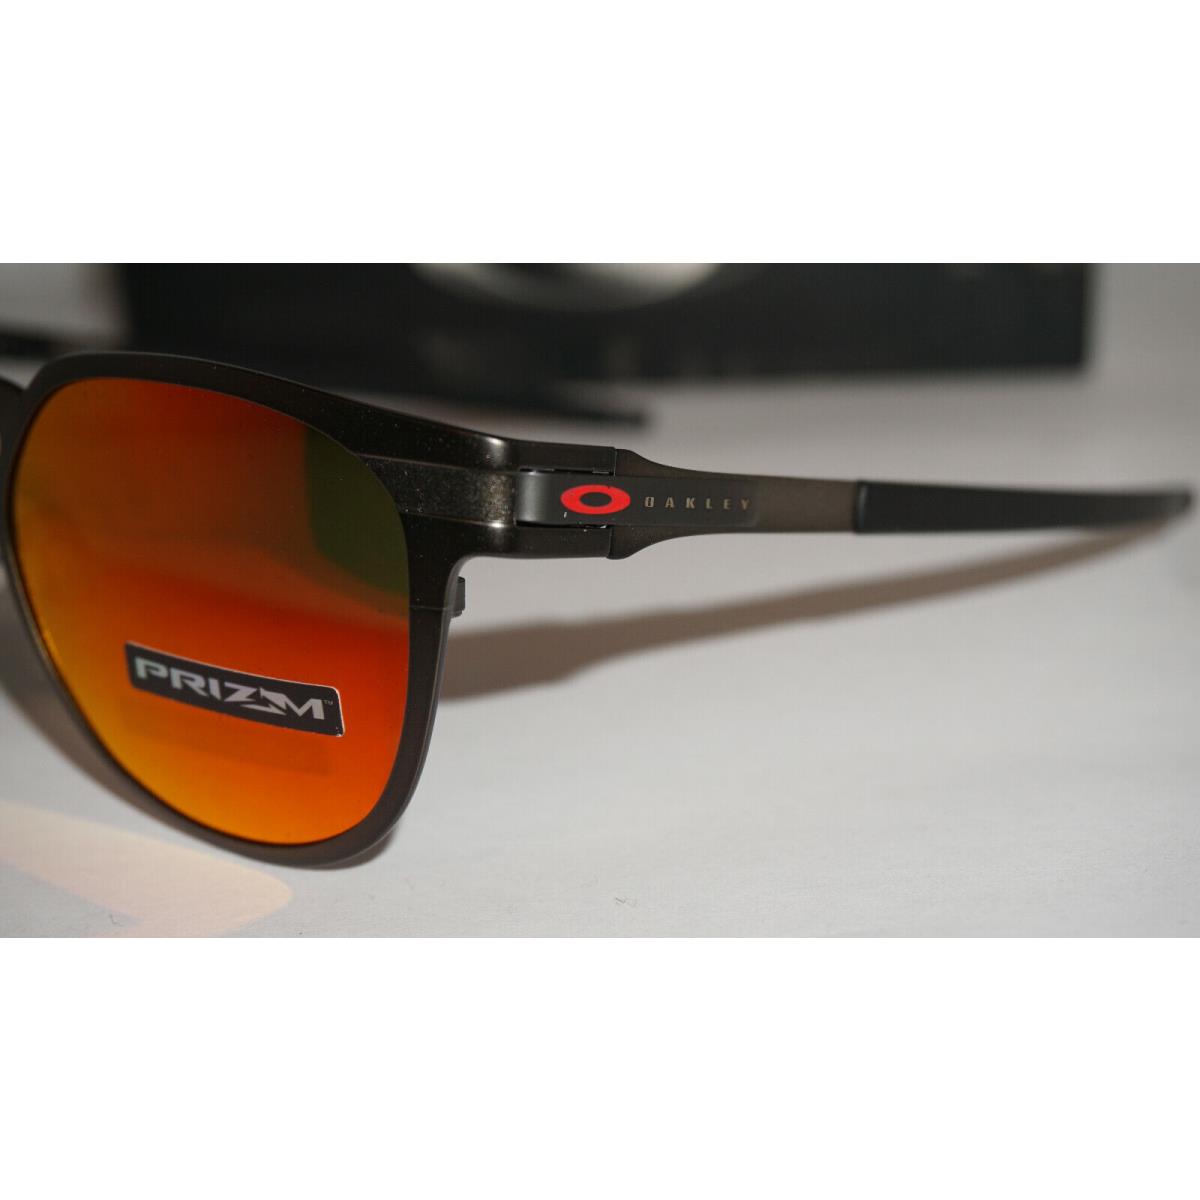 Oakley sunglasses  - Black Frame, Red Lens 3